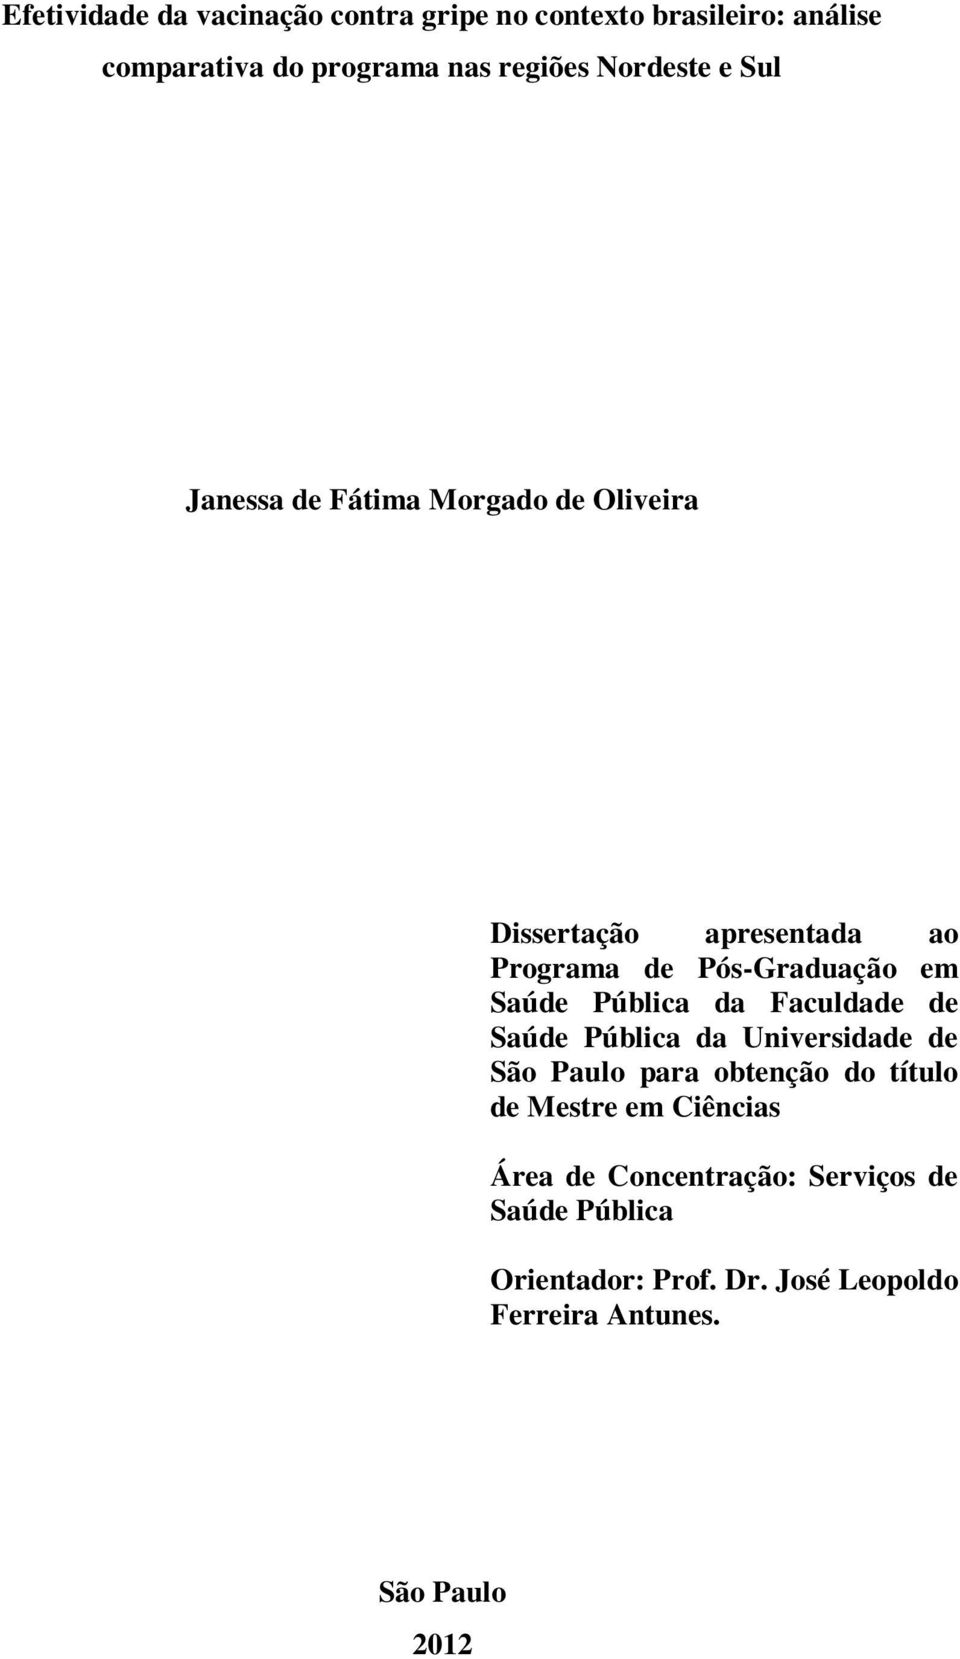 Saúde Pública da Faculdade de Saúde Pública da Universidade de São Paulo para obtenção do título de Mestre em